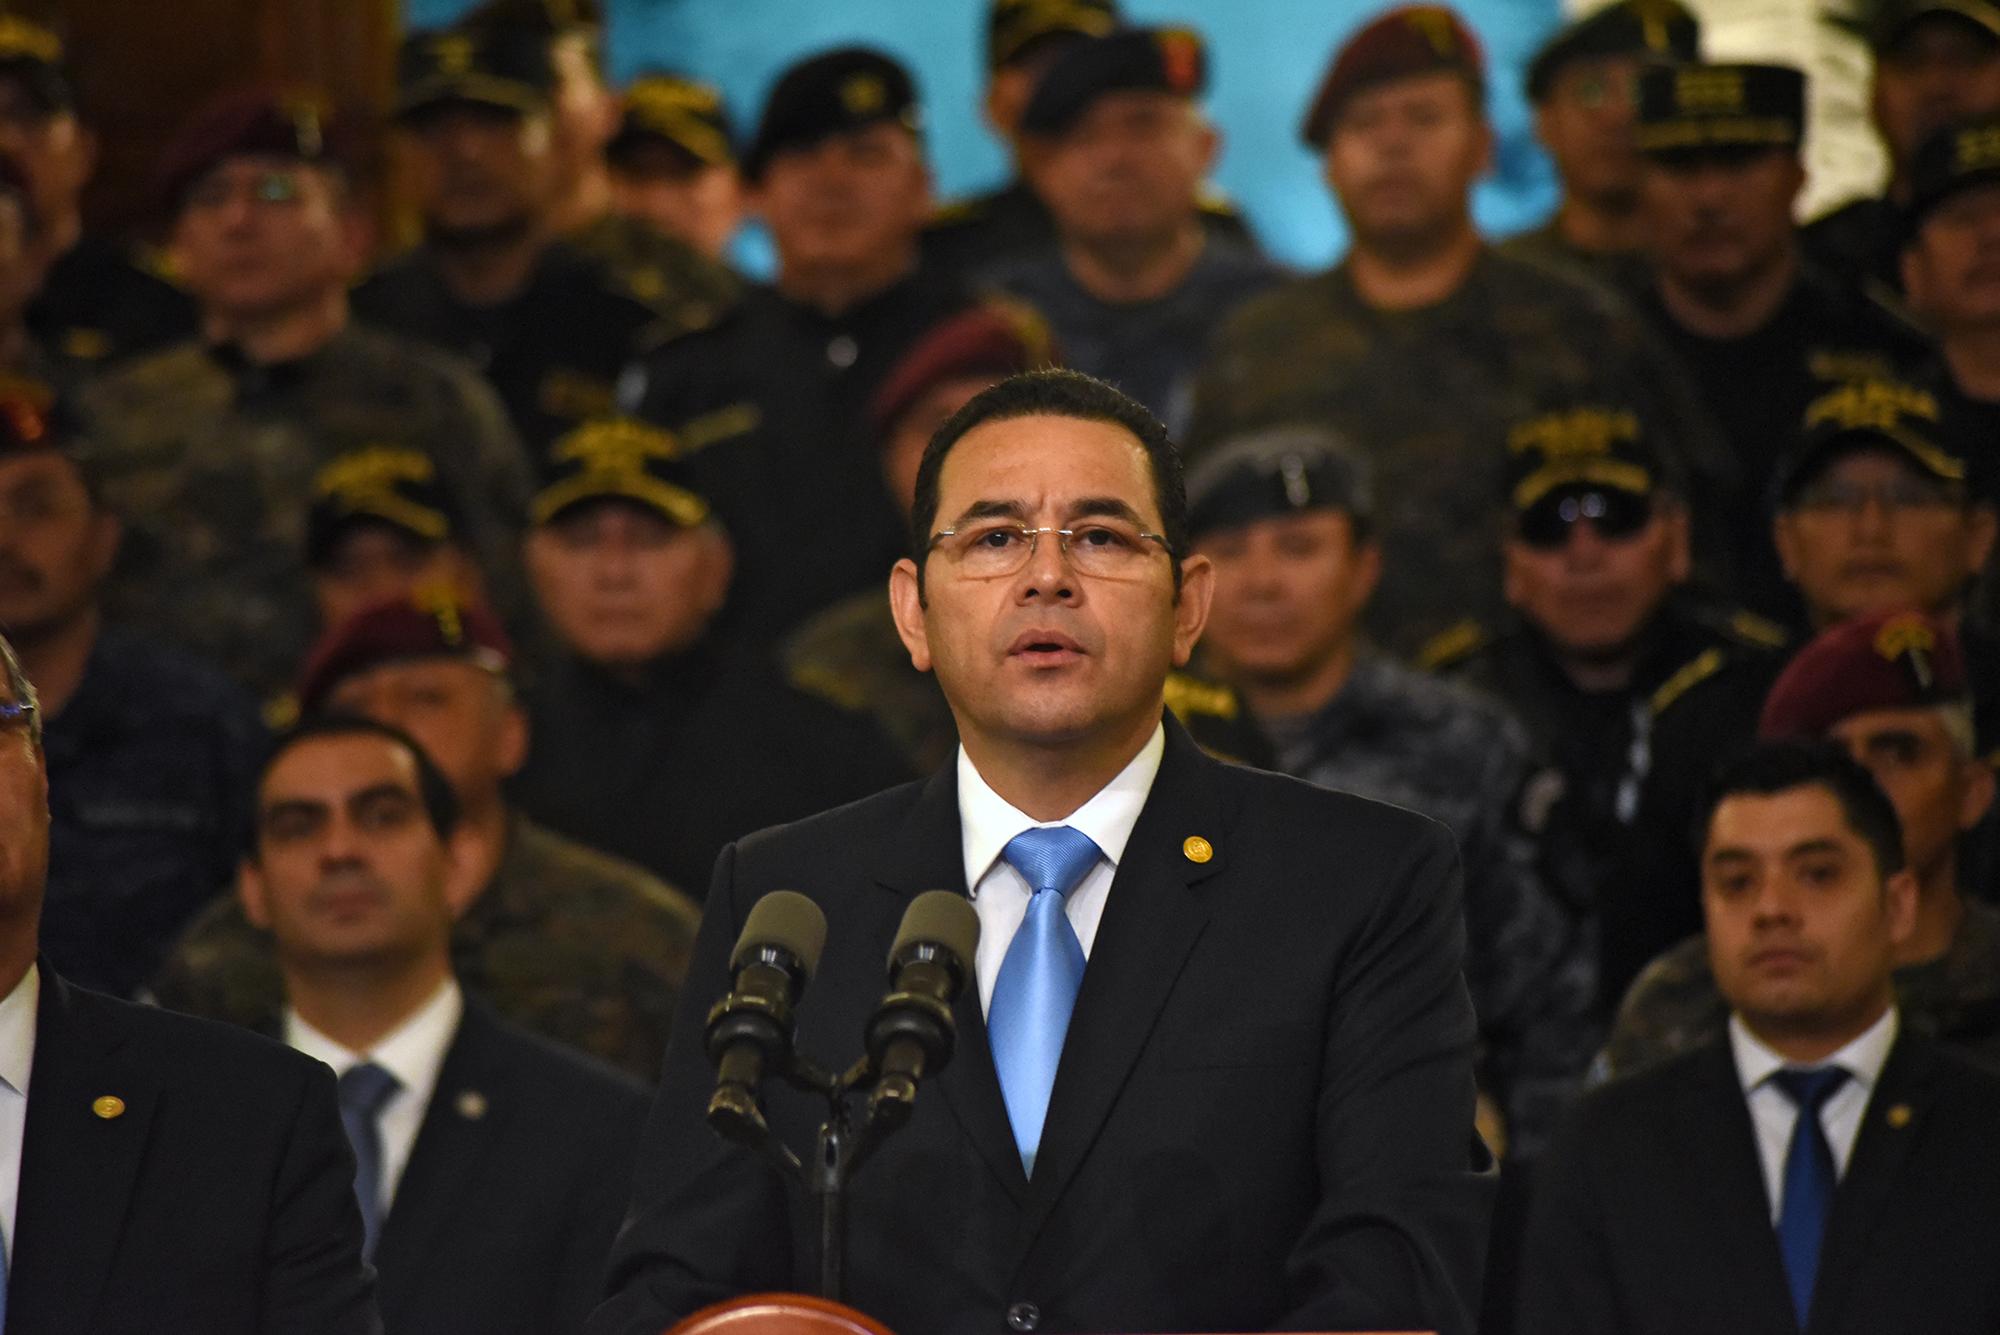 El presidente de Guatemala, Jimmy Morales, durante la conferencia de prensa en la que anunció que no renovará el mandato de la CICIG. Viernes 31 de agosto de 2018.  Foto: AFP  / Orlando Estrada.